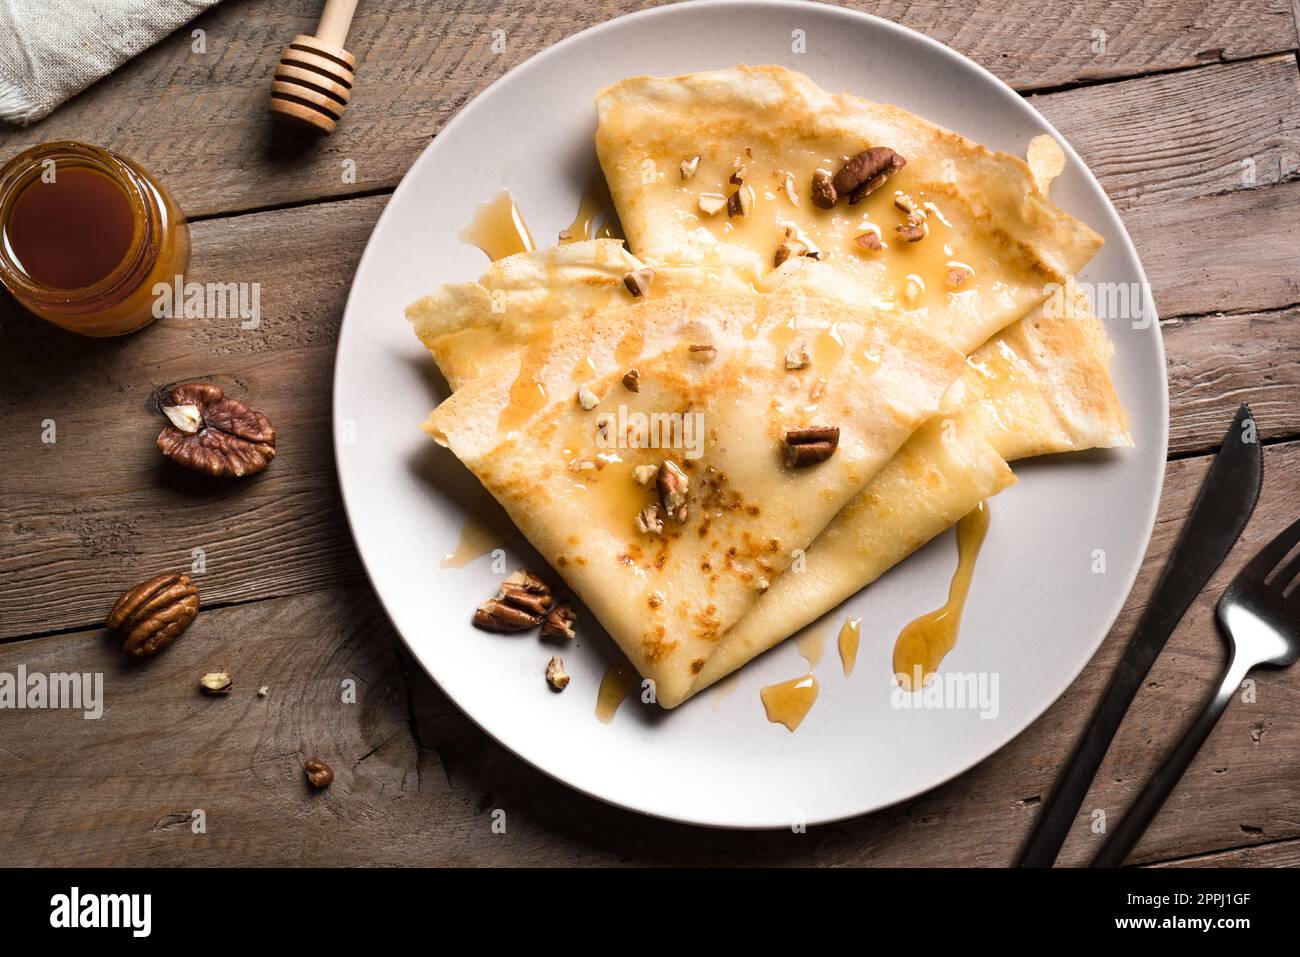 Crêpes Suzette au miel et noix de pécan sur fond en bois de près. Crêpes faites maison pour le petit-déjeuner ou le dessert. Banque D'Images